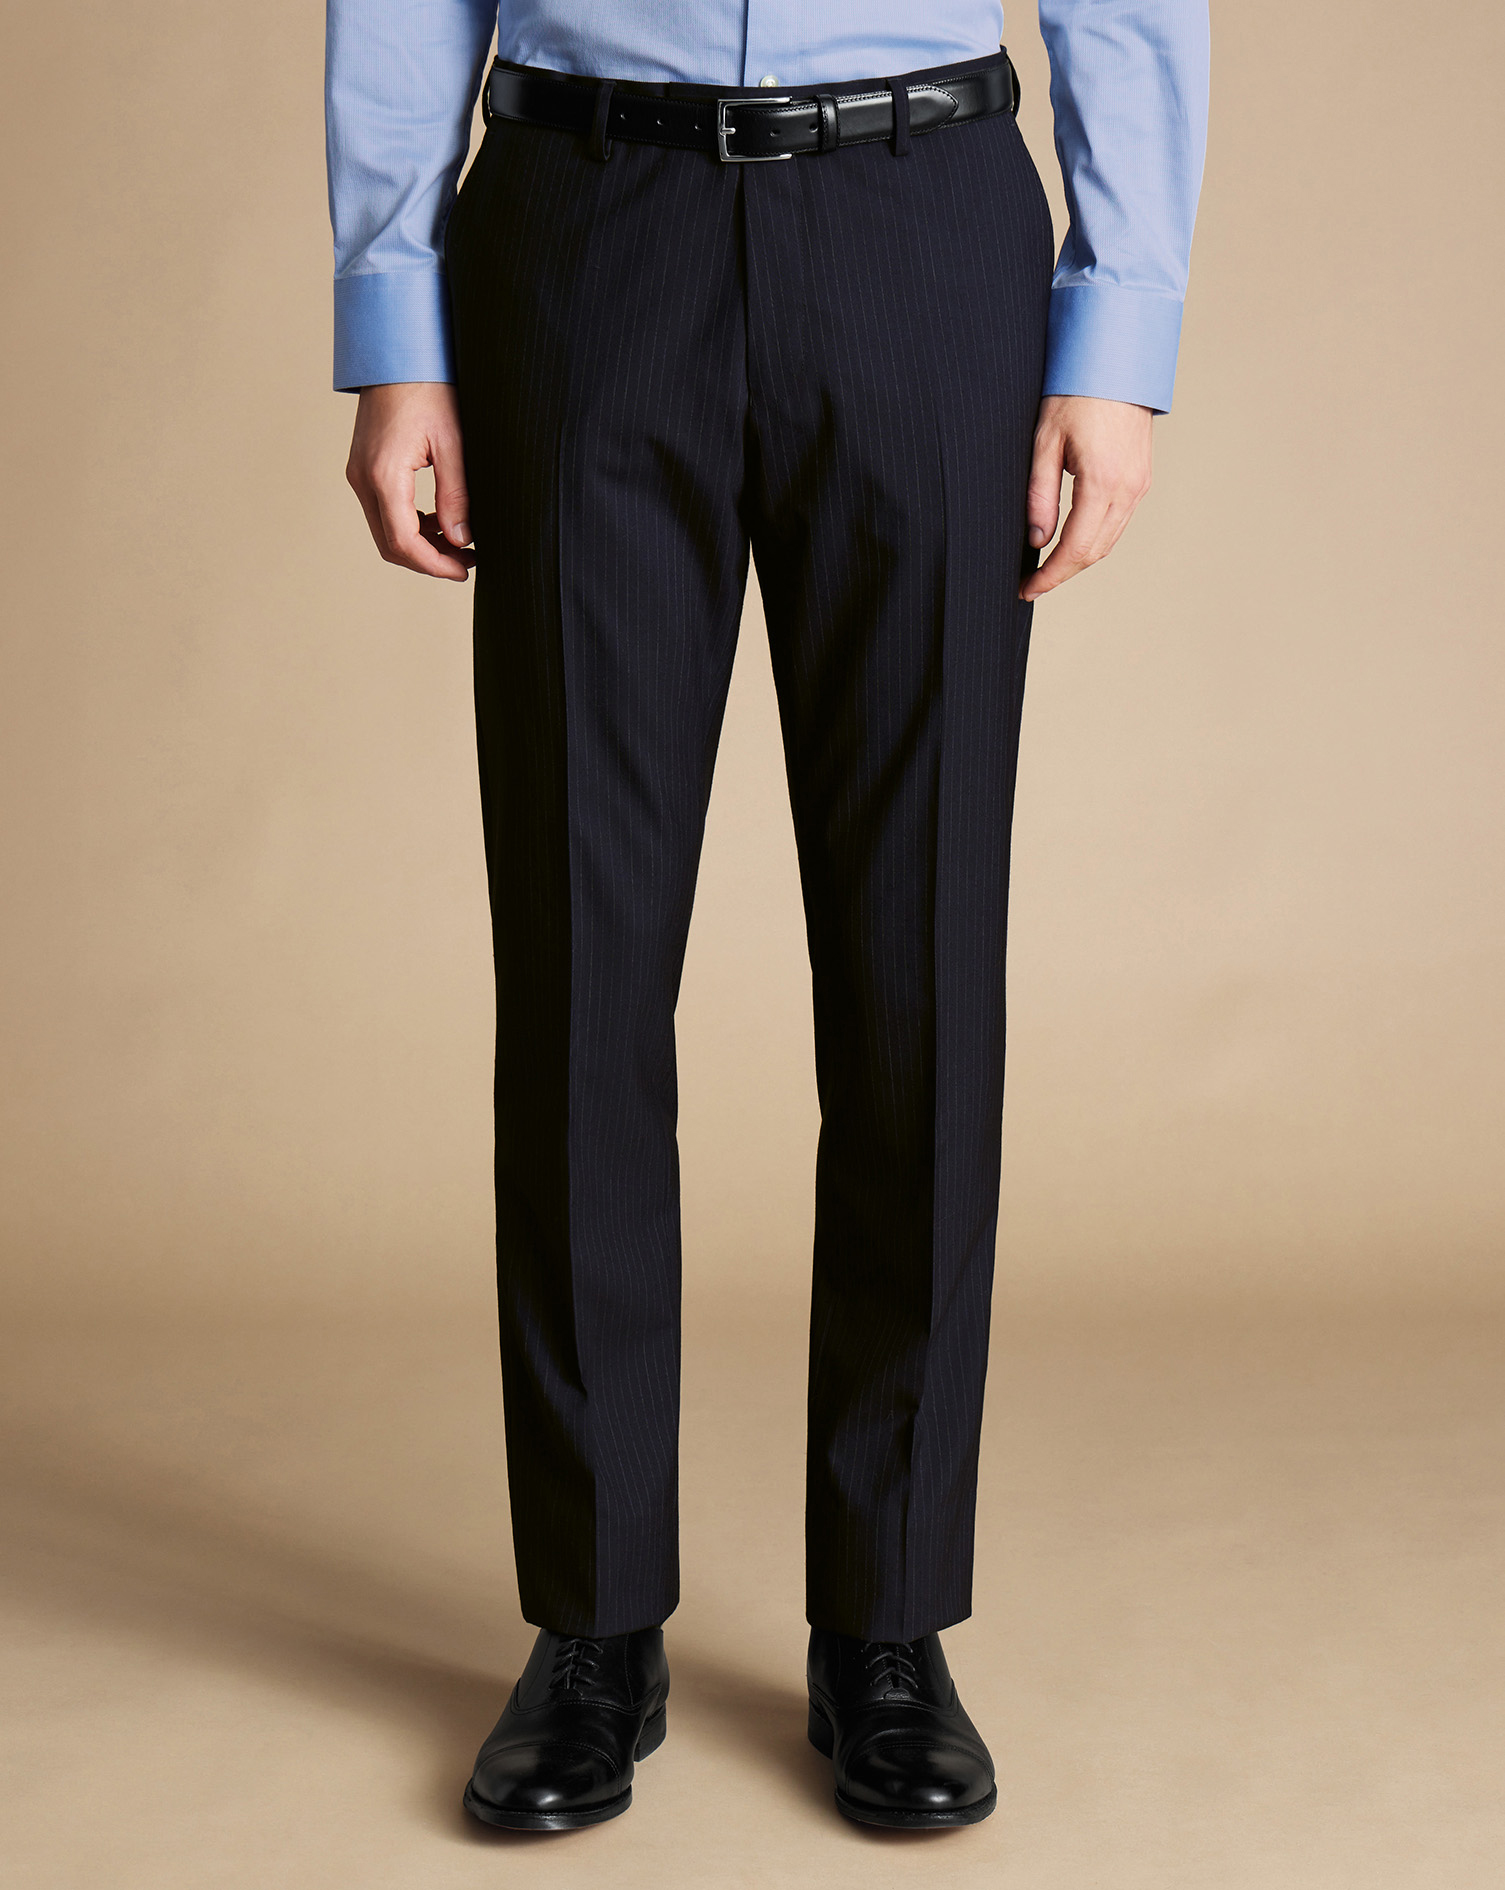 Men's Charles Tyrwhitt Ultimate Performance Stripe Suit Trousers - Dark Navy Size 34/32
